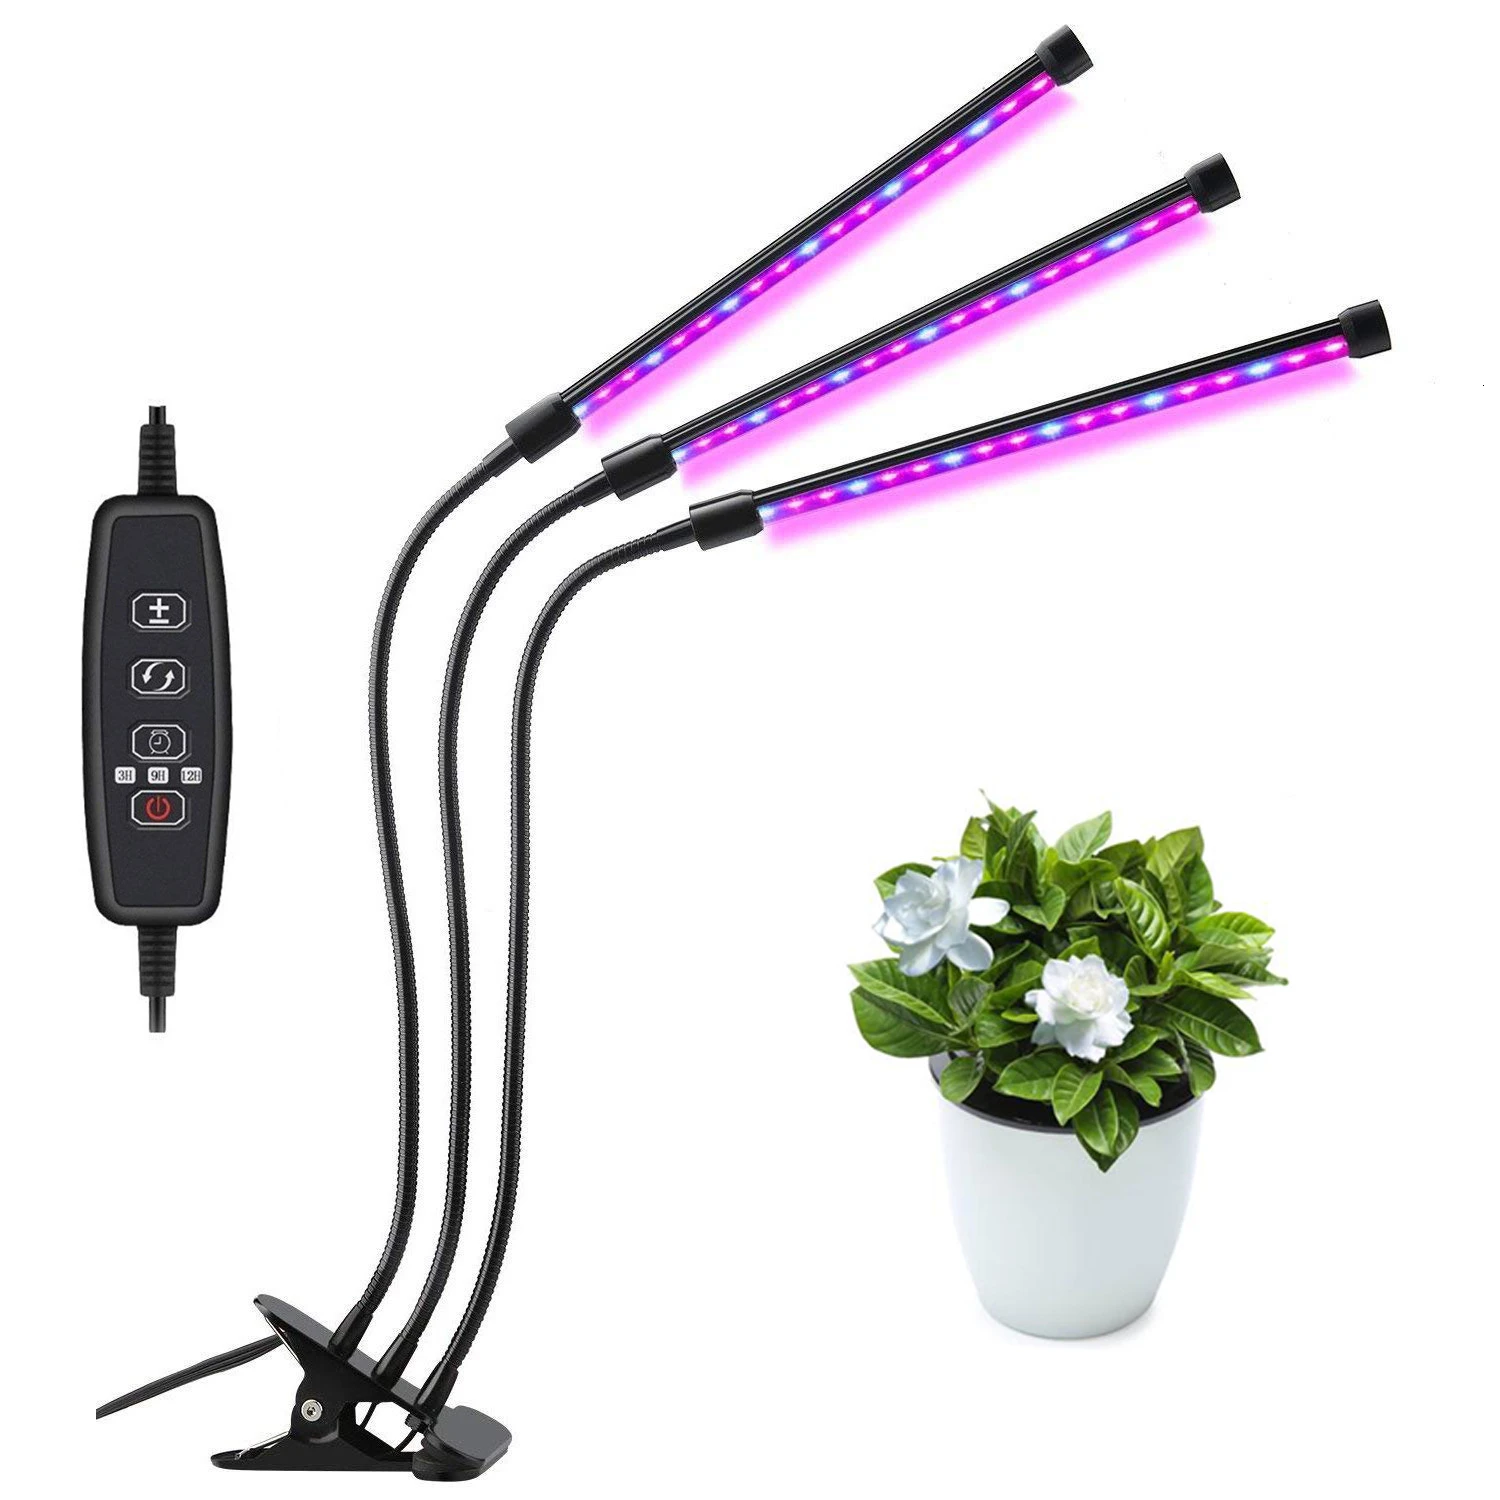 Светодиодный светильник для выращивания растений 18 Вт, 27 Вт, 36 Вт, фито-лампа с таймером для 9 растений с регулируемой яркостью, полный спектр, растительный светильник s для комнатных саженцев - Испускаемый цвет: 27W-54LED